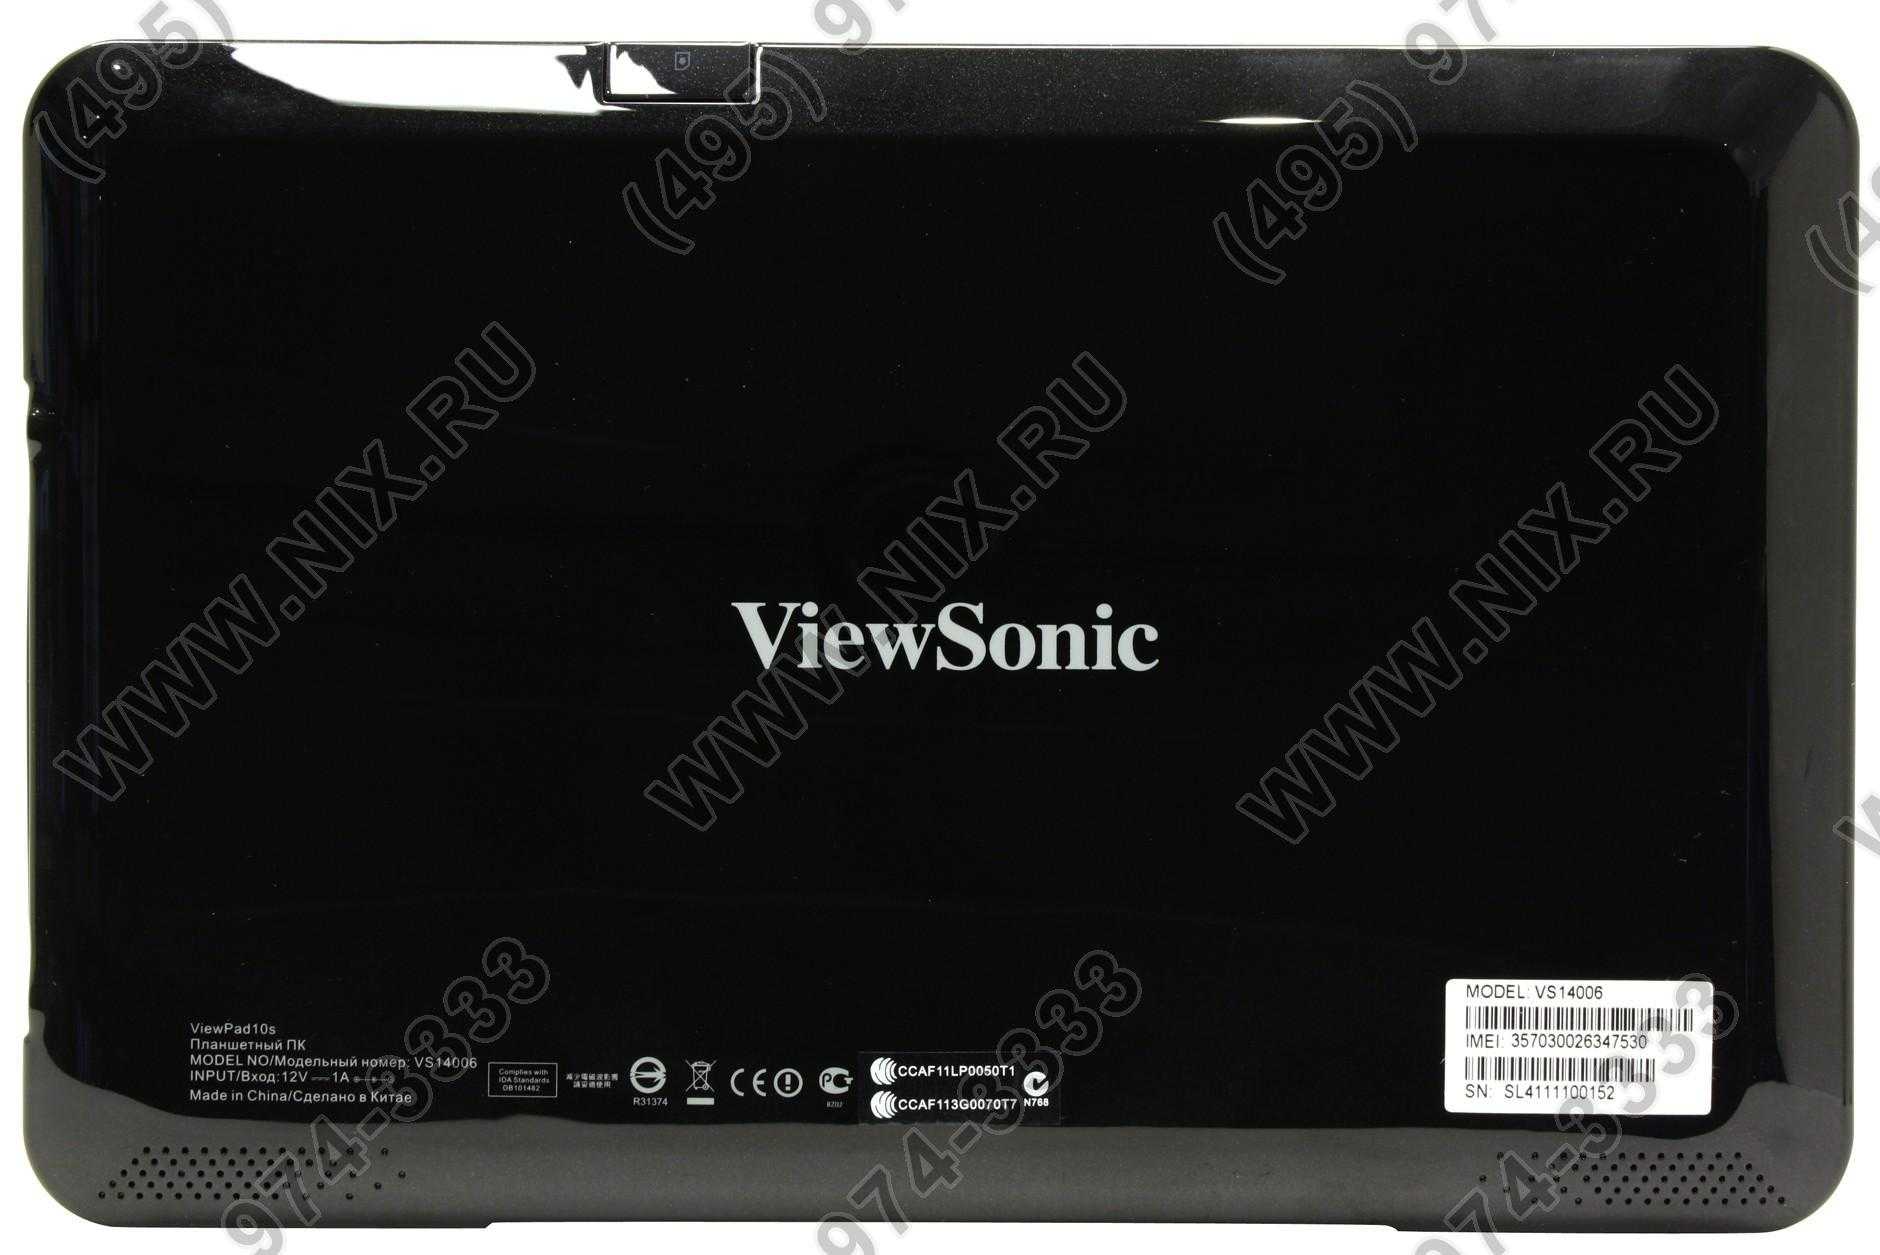 Viewsonic viewpad 100d купить по акционной цене , отзывы и обзоры.